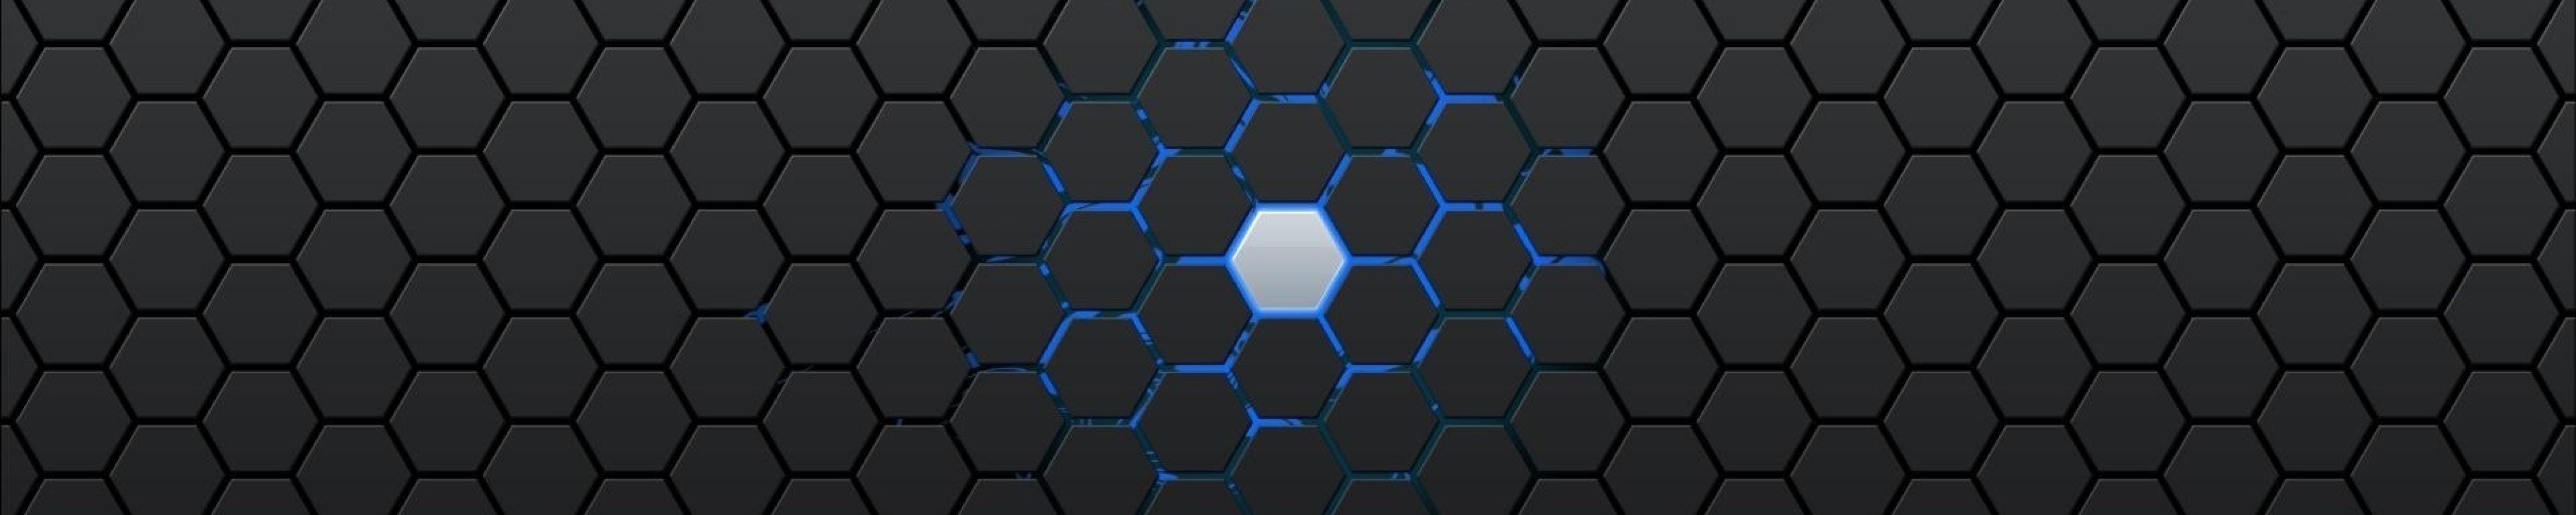 5001x1000 Hexagon Pattern 5001x1000 Resolution Wallpaper, HD Artist 4K ...